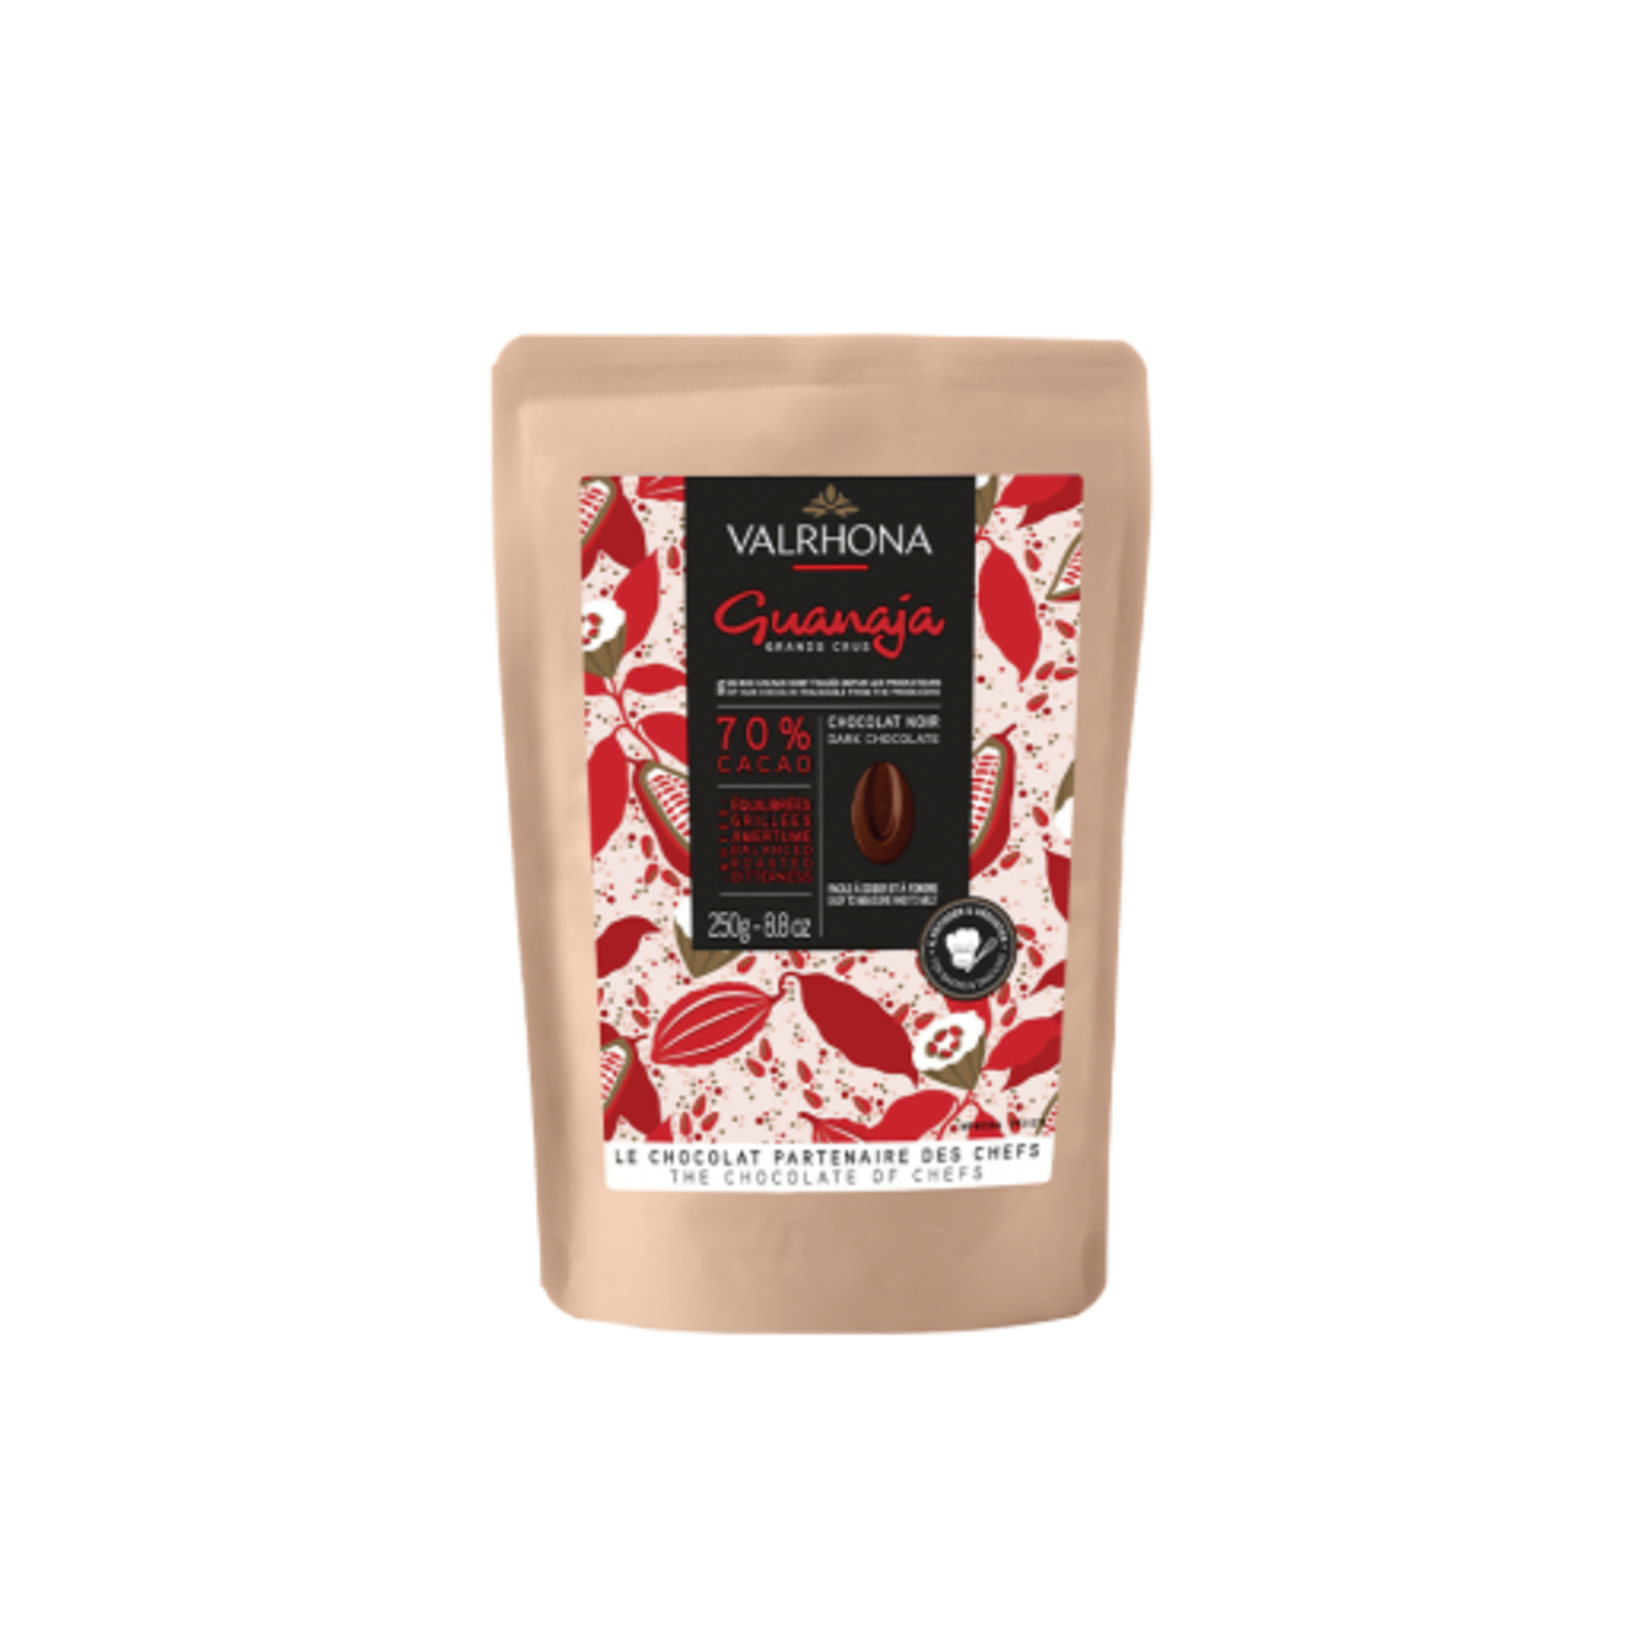 Valrhona Valrhona - Guanaja Dark Chocolate 70% - 250g/8.8oz, 31215